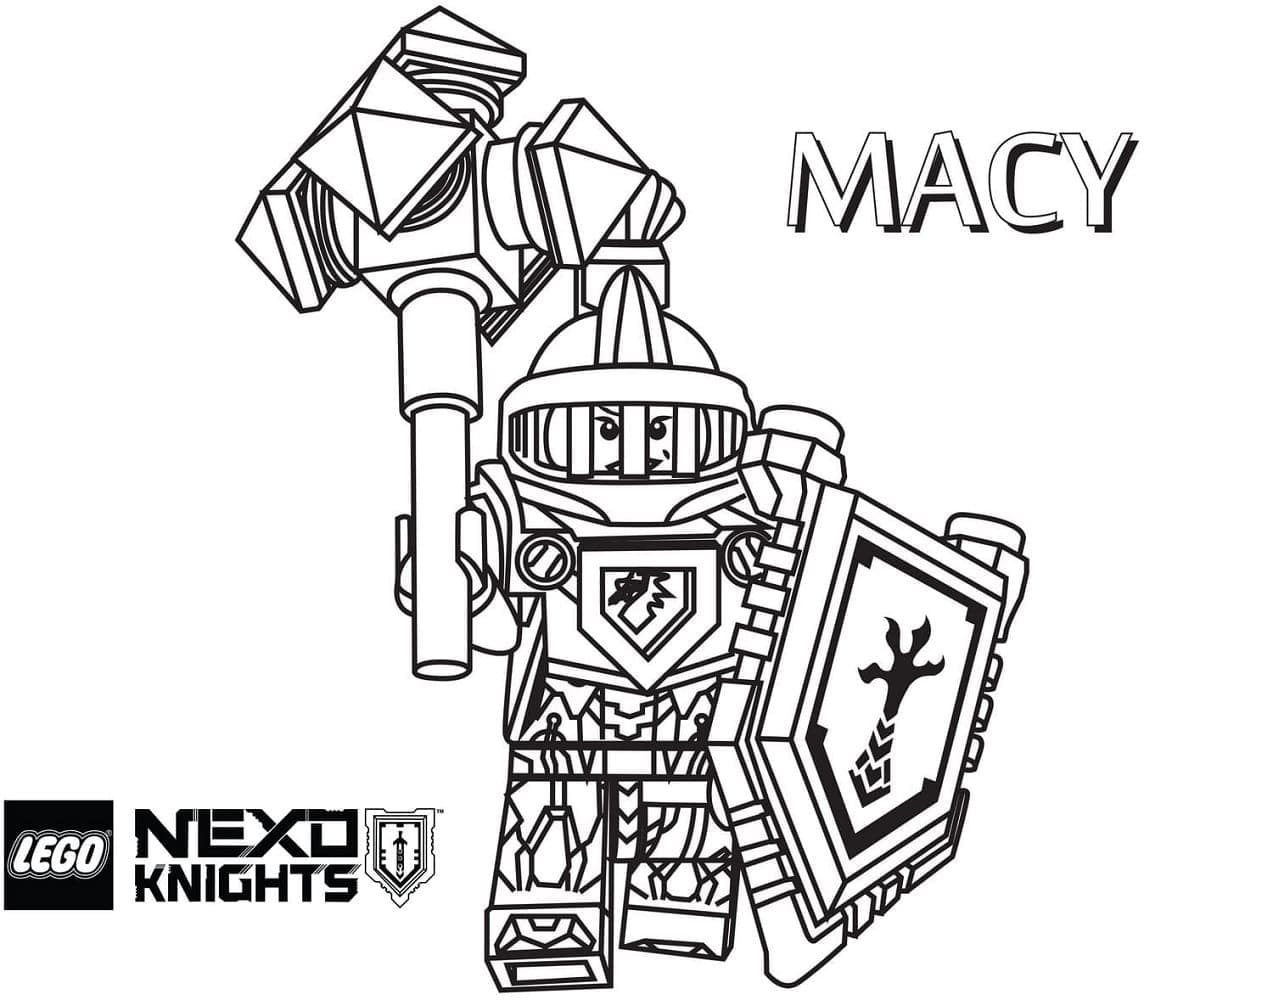 Macy de Lego Nexo Knights coloring page